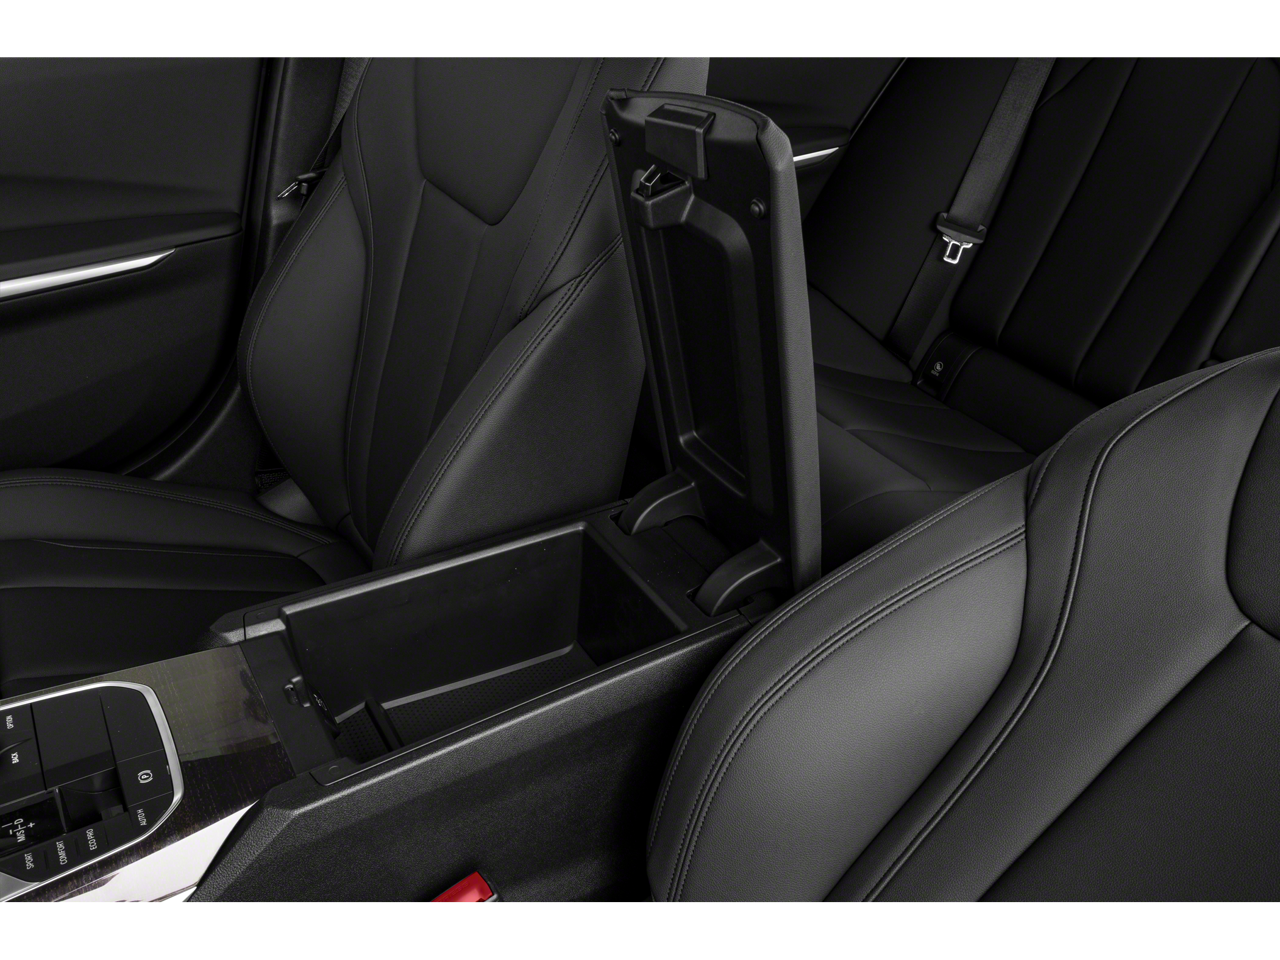 2021 BMW 3 Series 330i xDrive w/Heated Leather, Moonroof, 19" Wheels, CarPlay, 1